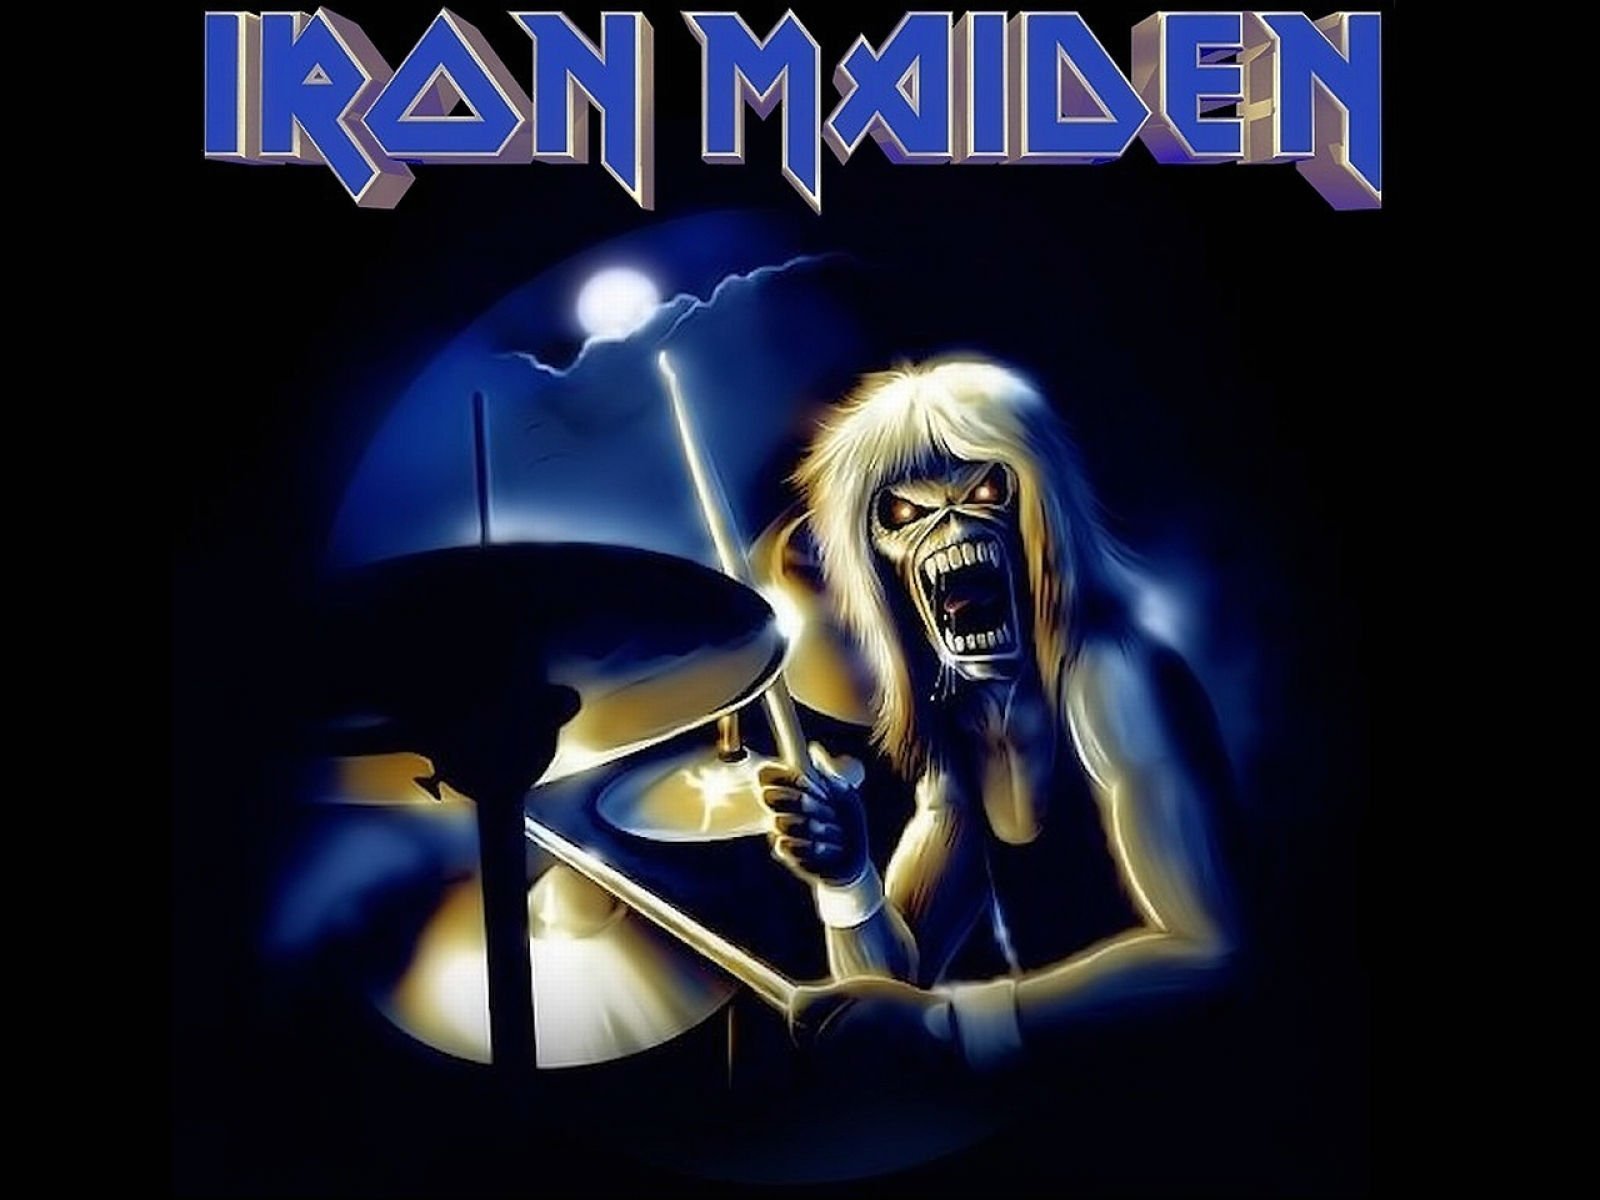 Айрон мейден лучшие песни. Ирон майден группа. Группа Айрон мейден эмблема. Iron Maiden фото группы.